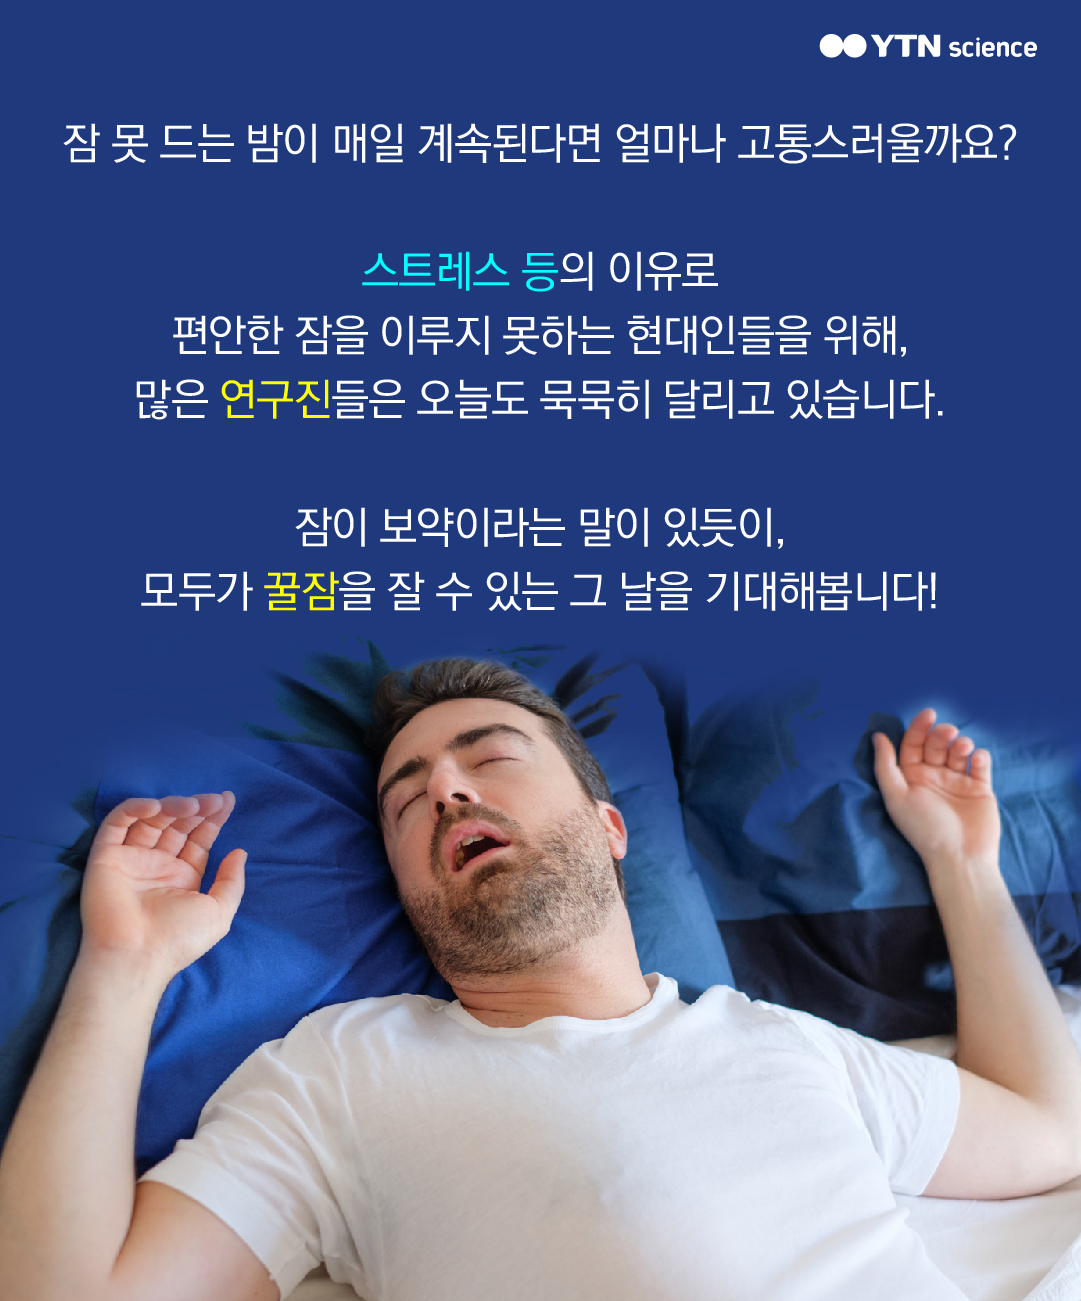 잠 못 드는 밤이 매일 계속된다면 얼마나 고통스러울까요? 스트레스 등의 이유로 편안한 잠을 이루지 못하는 현대인들을 위해, 많은 연구진들은 오늘도 묵묵히 달리고 있습니다. 잠이 보약이라는 말이 있듯이, 모두가 꿀잠을 잘 수 있는 그 날을 기대해봅니다!